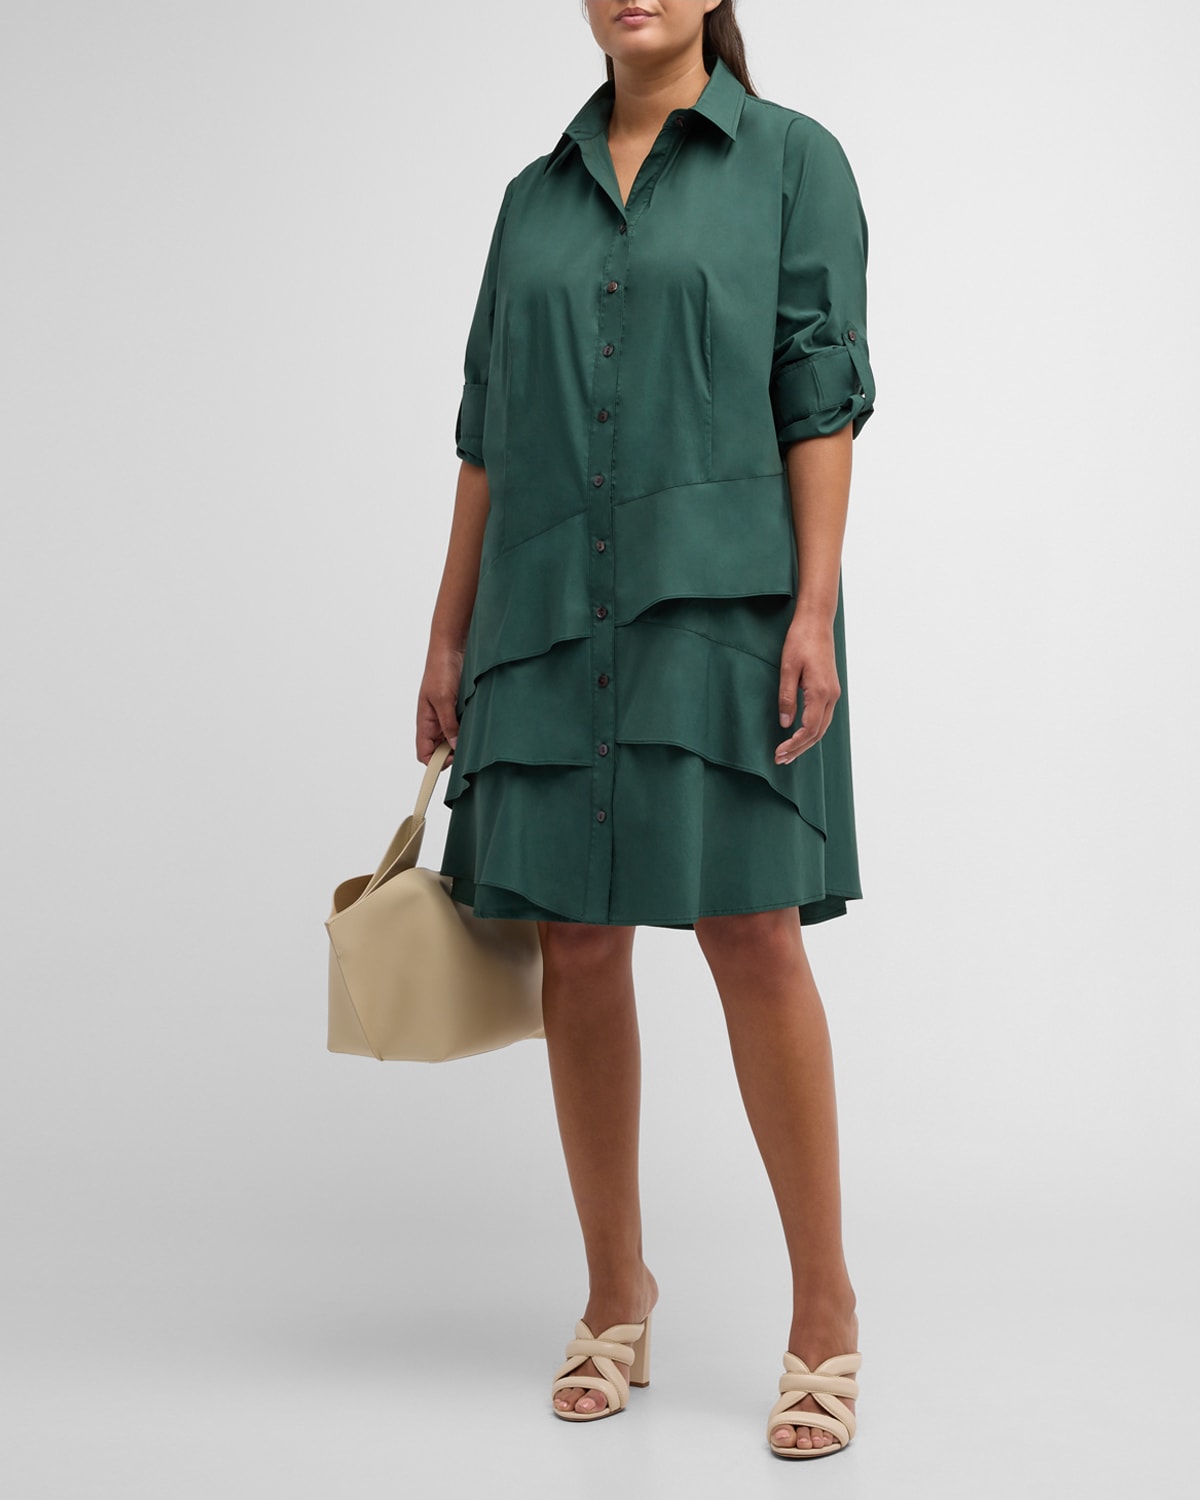 Finley Plus Size Jenna Ruffle-Trim Midi Shirtdress